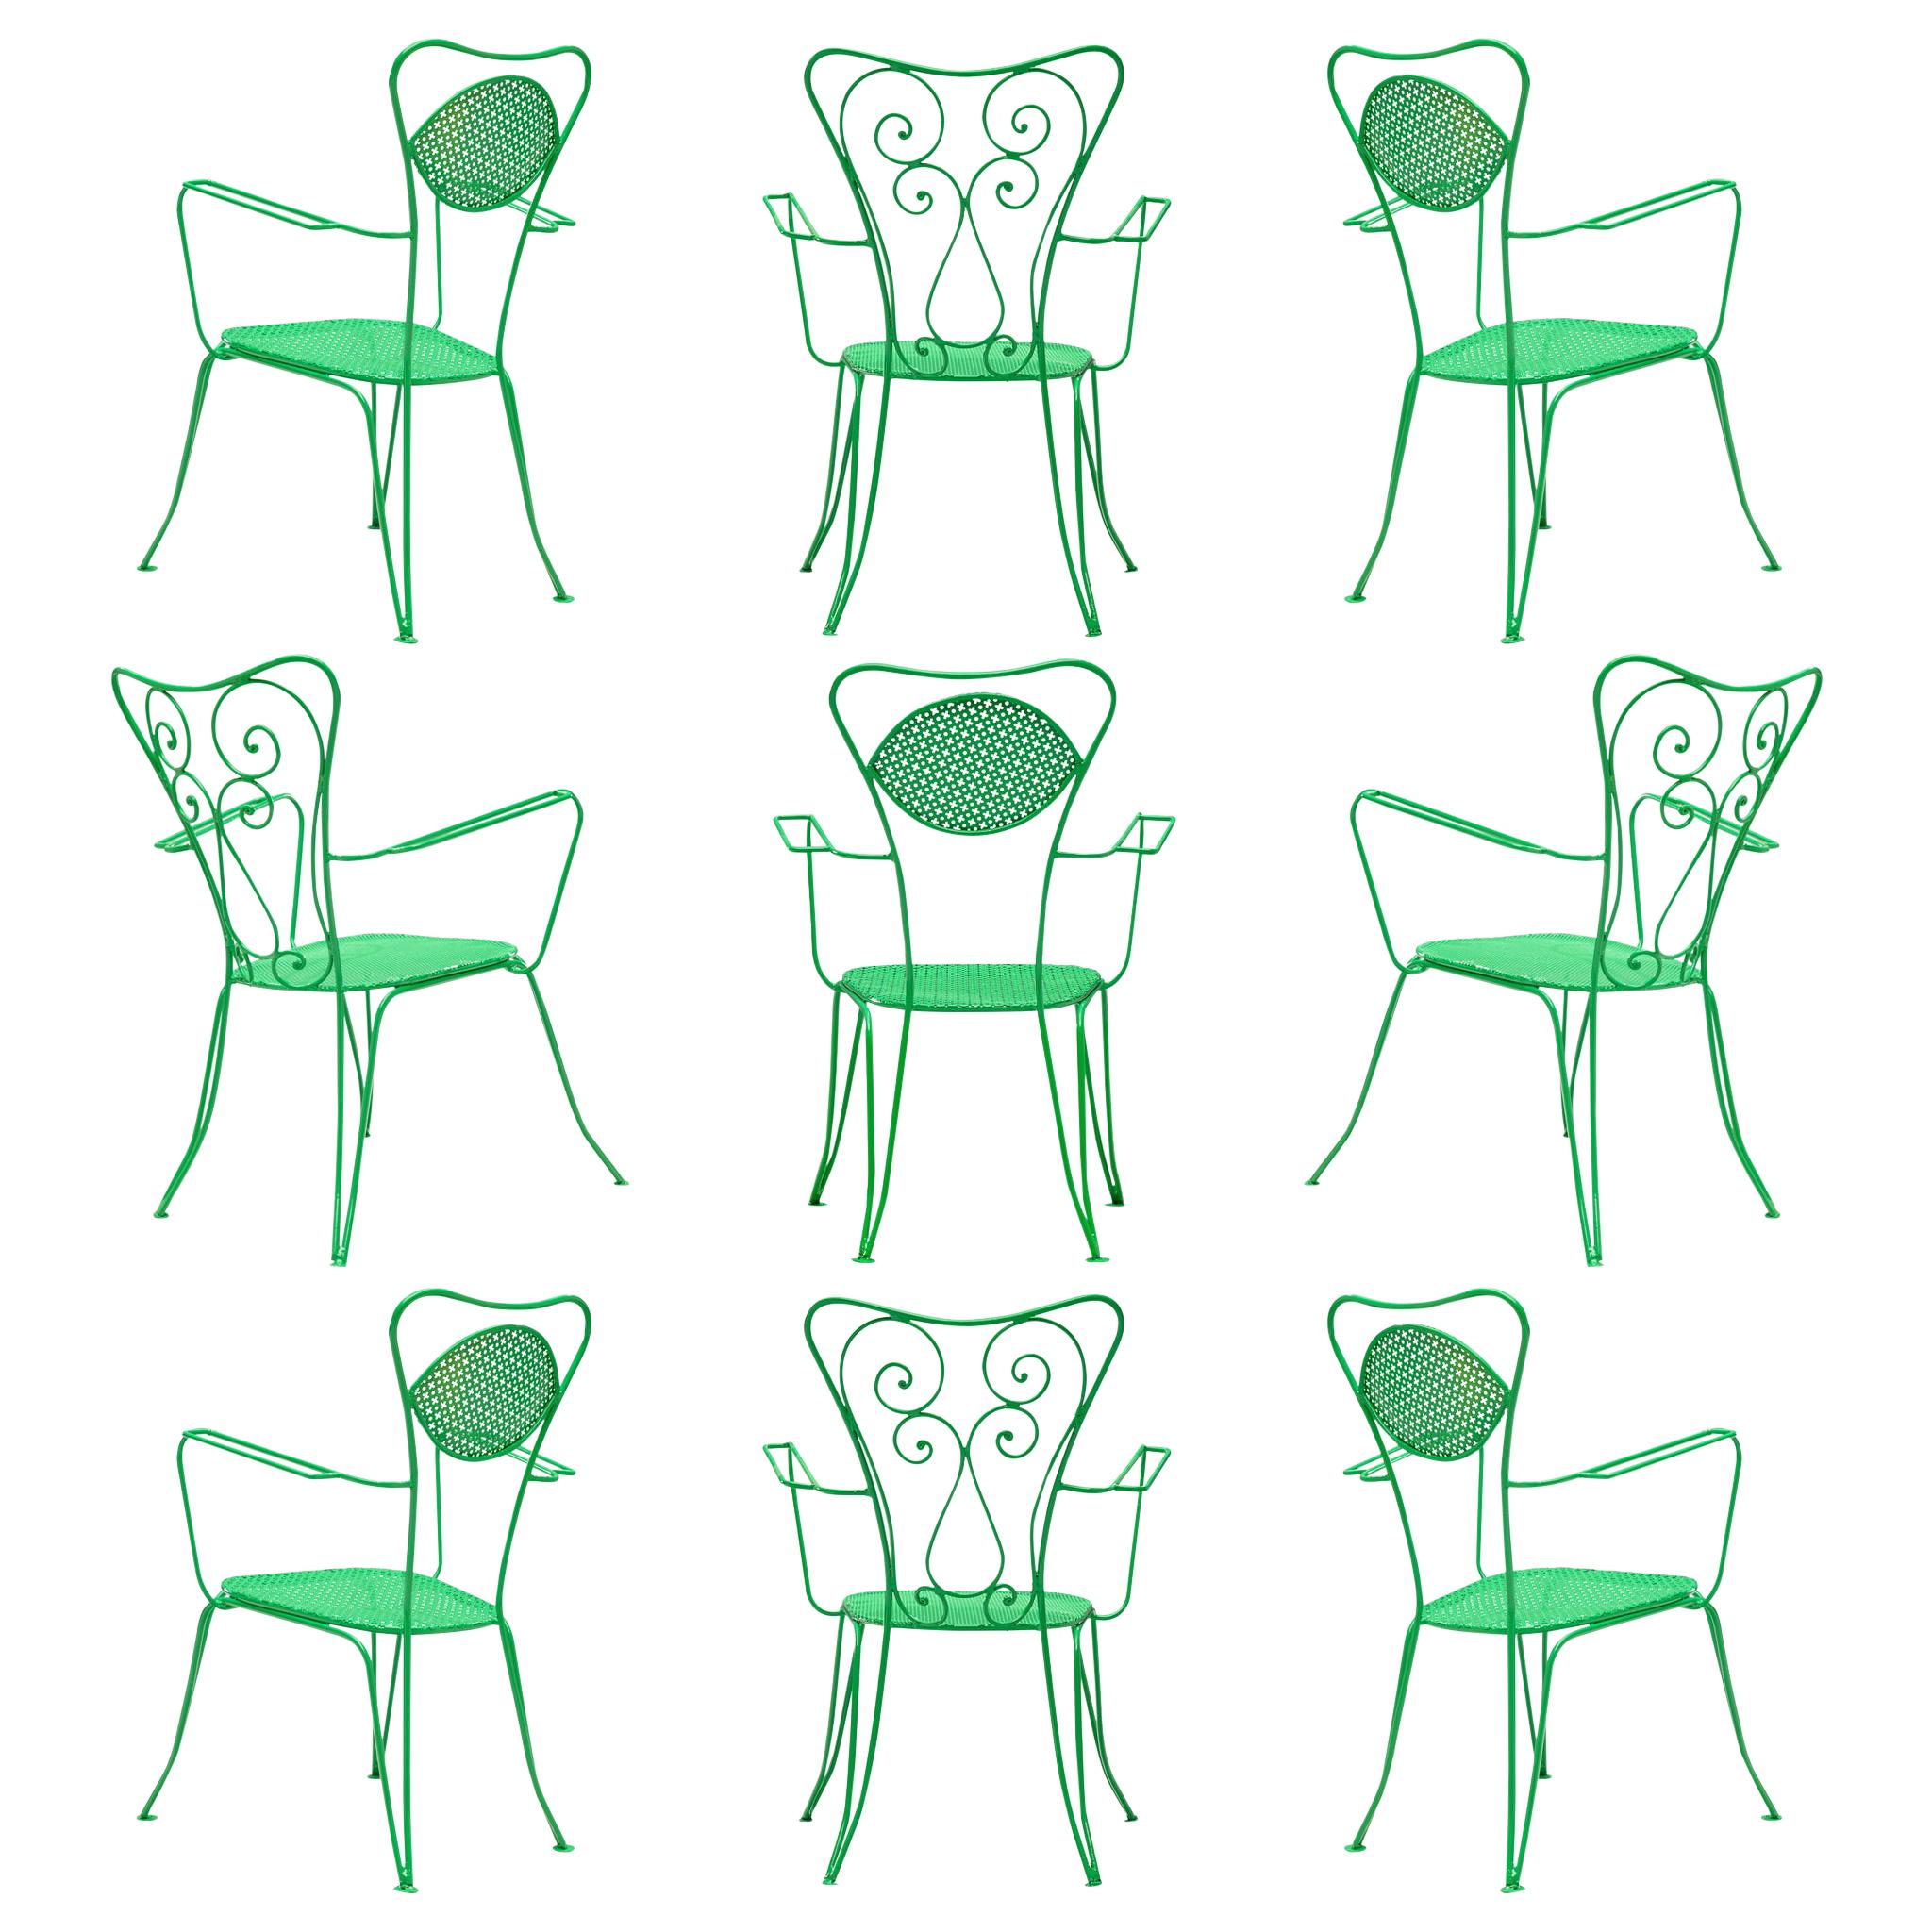  Satz italienischer Terrassenstühle aus grün lackiertem Stahl